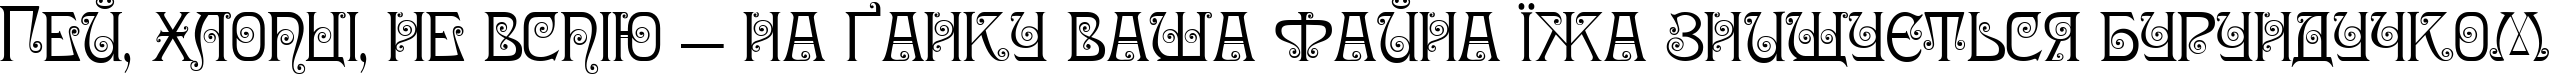 Пример написания шрифтом Nympha One текста на украинском